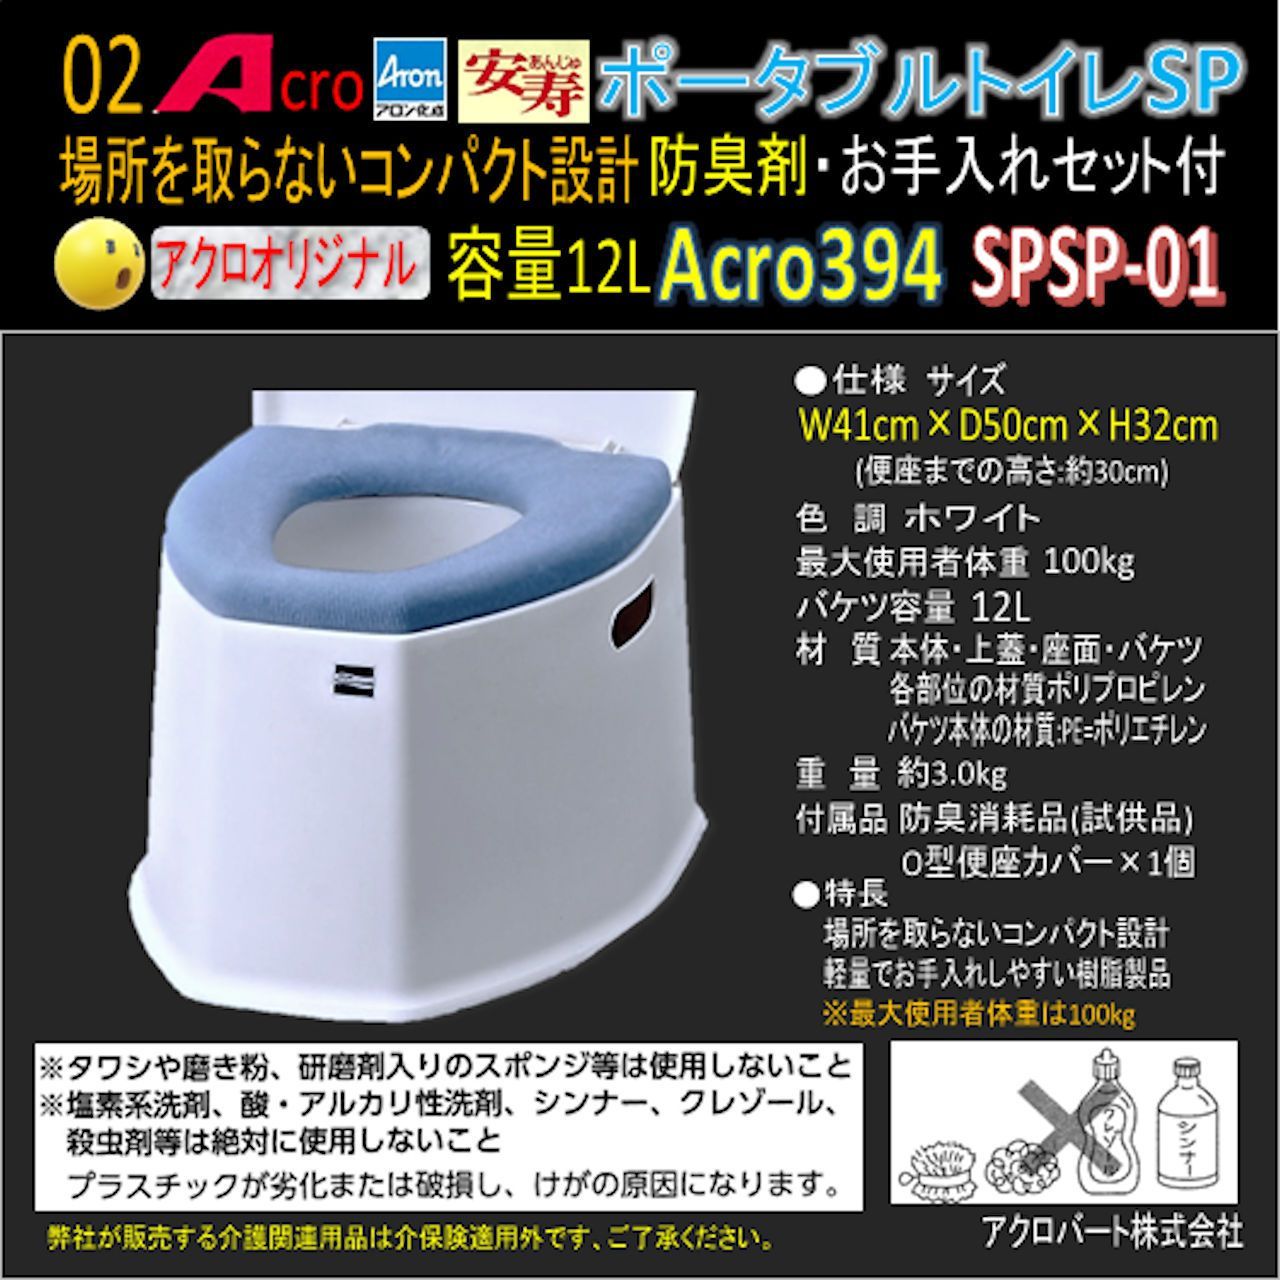 Acro394アロンポータブルトイレSP&防臭剤・清掃保護品お手入れ付-01